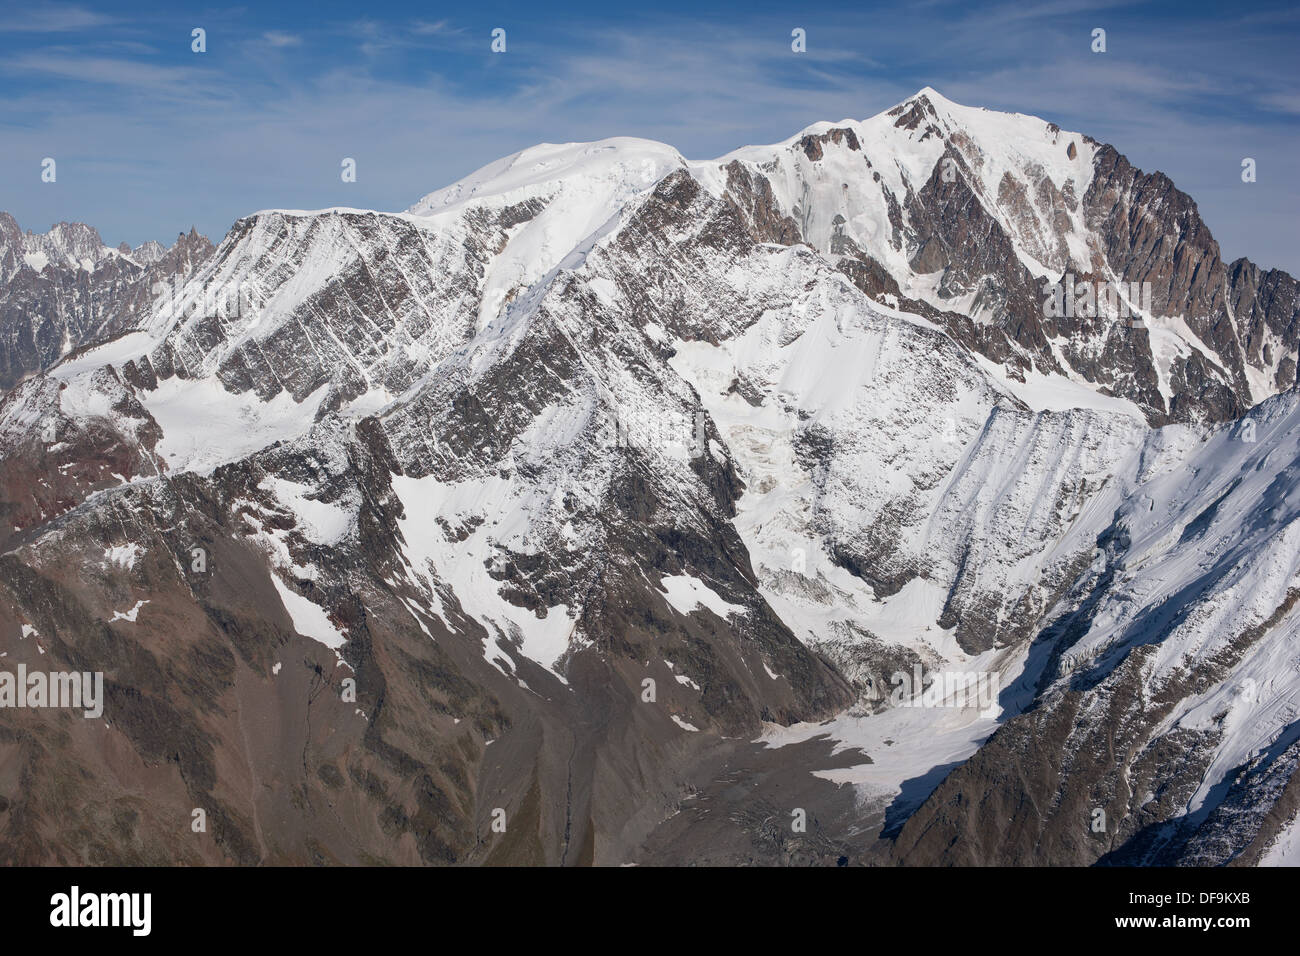 AERIAL VIEW. Left to right: Aiguille du Goûter (3863m), Dome du Goûter (4304m), Mont Blanc (4810m). Saint-Gervais, Auvergne-Rhône-Alpes, France. Stock Photo